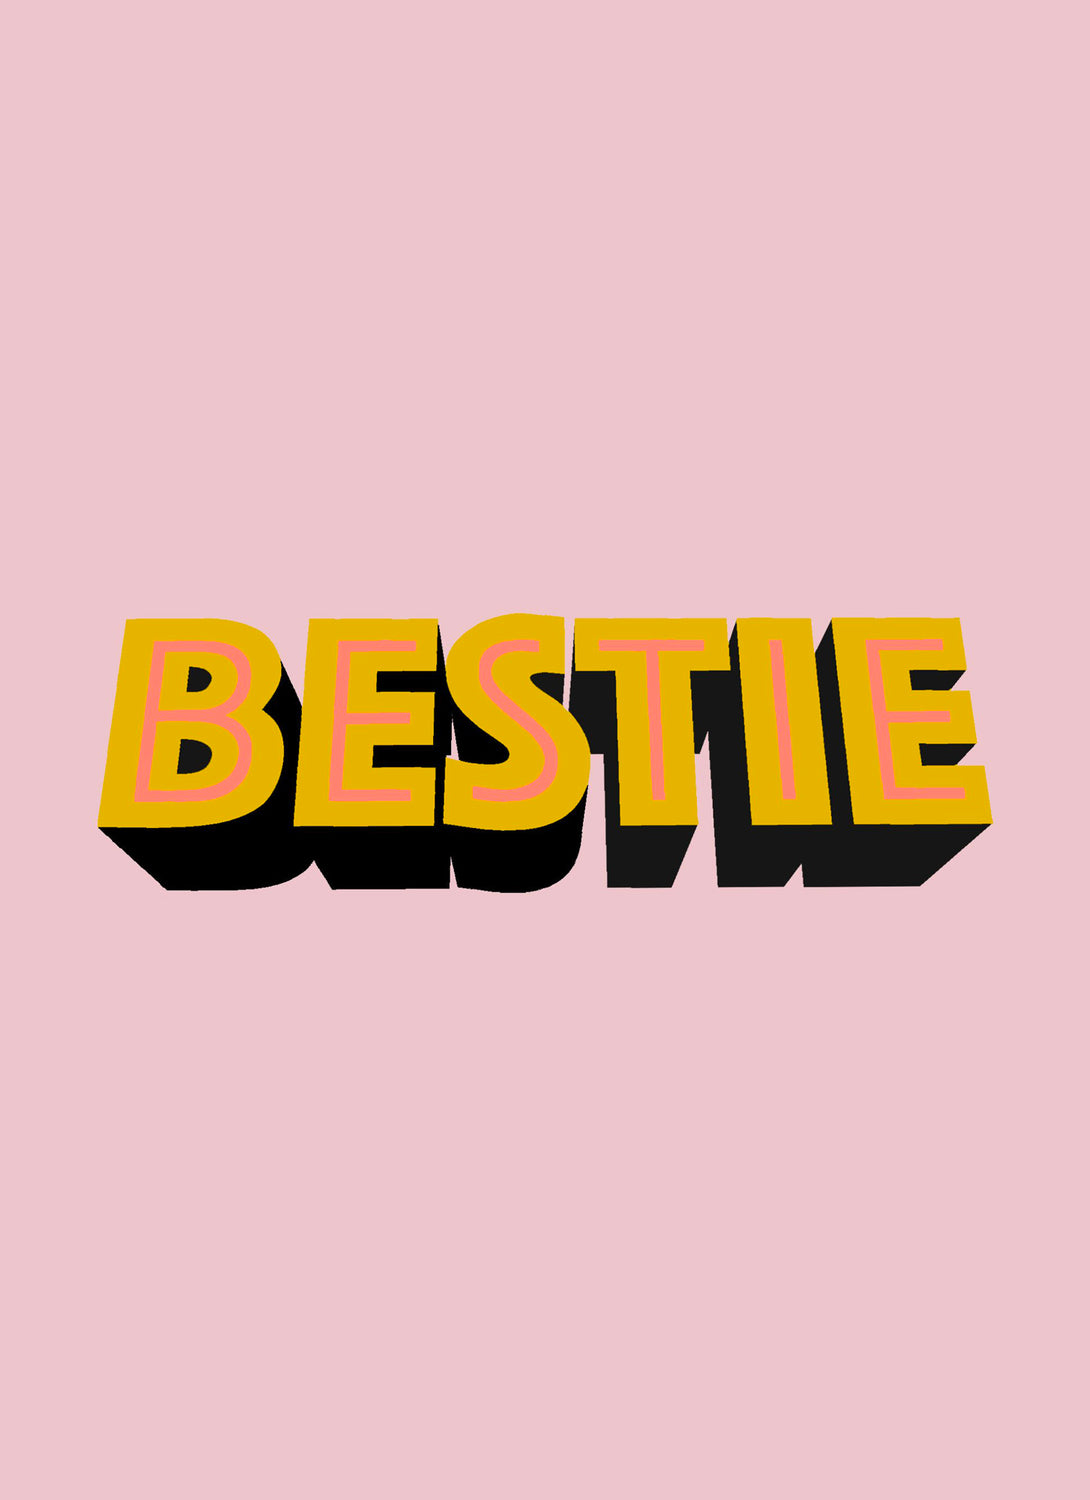 Bestie Card